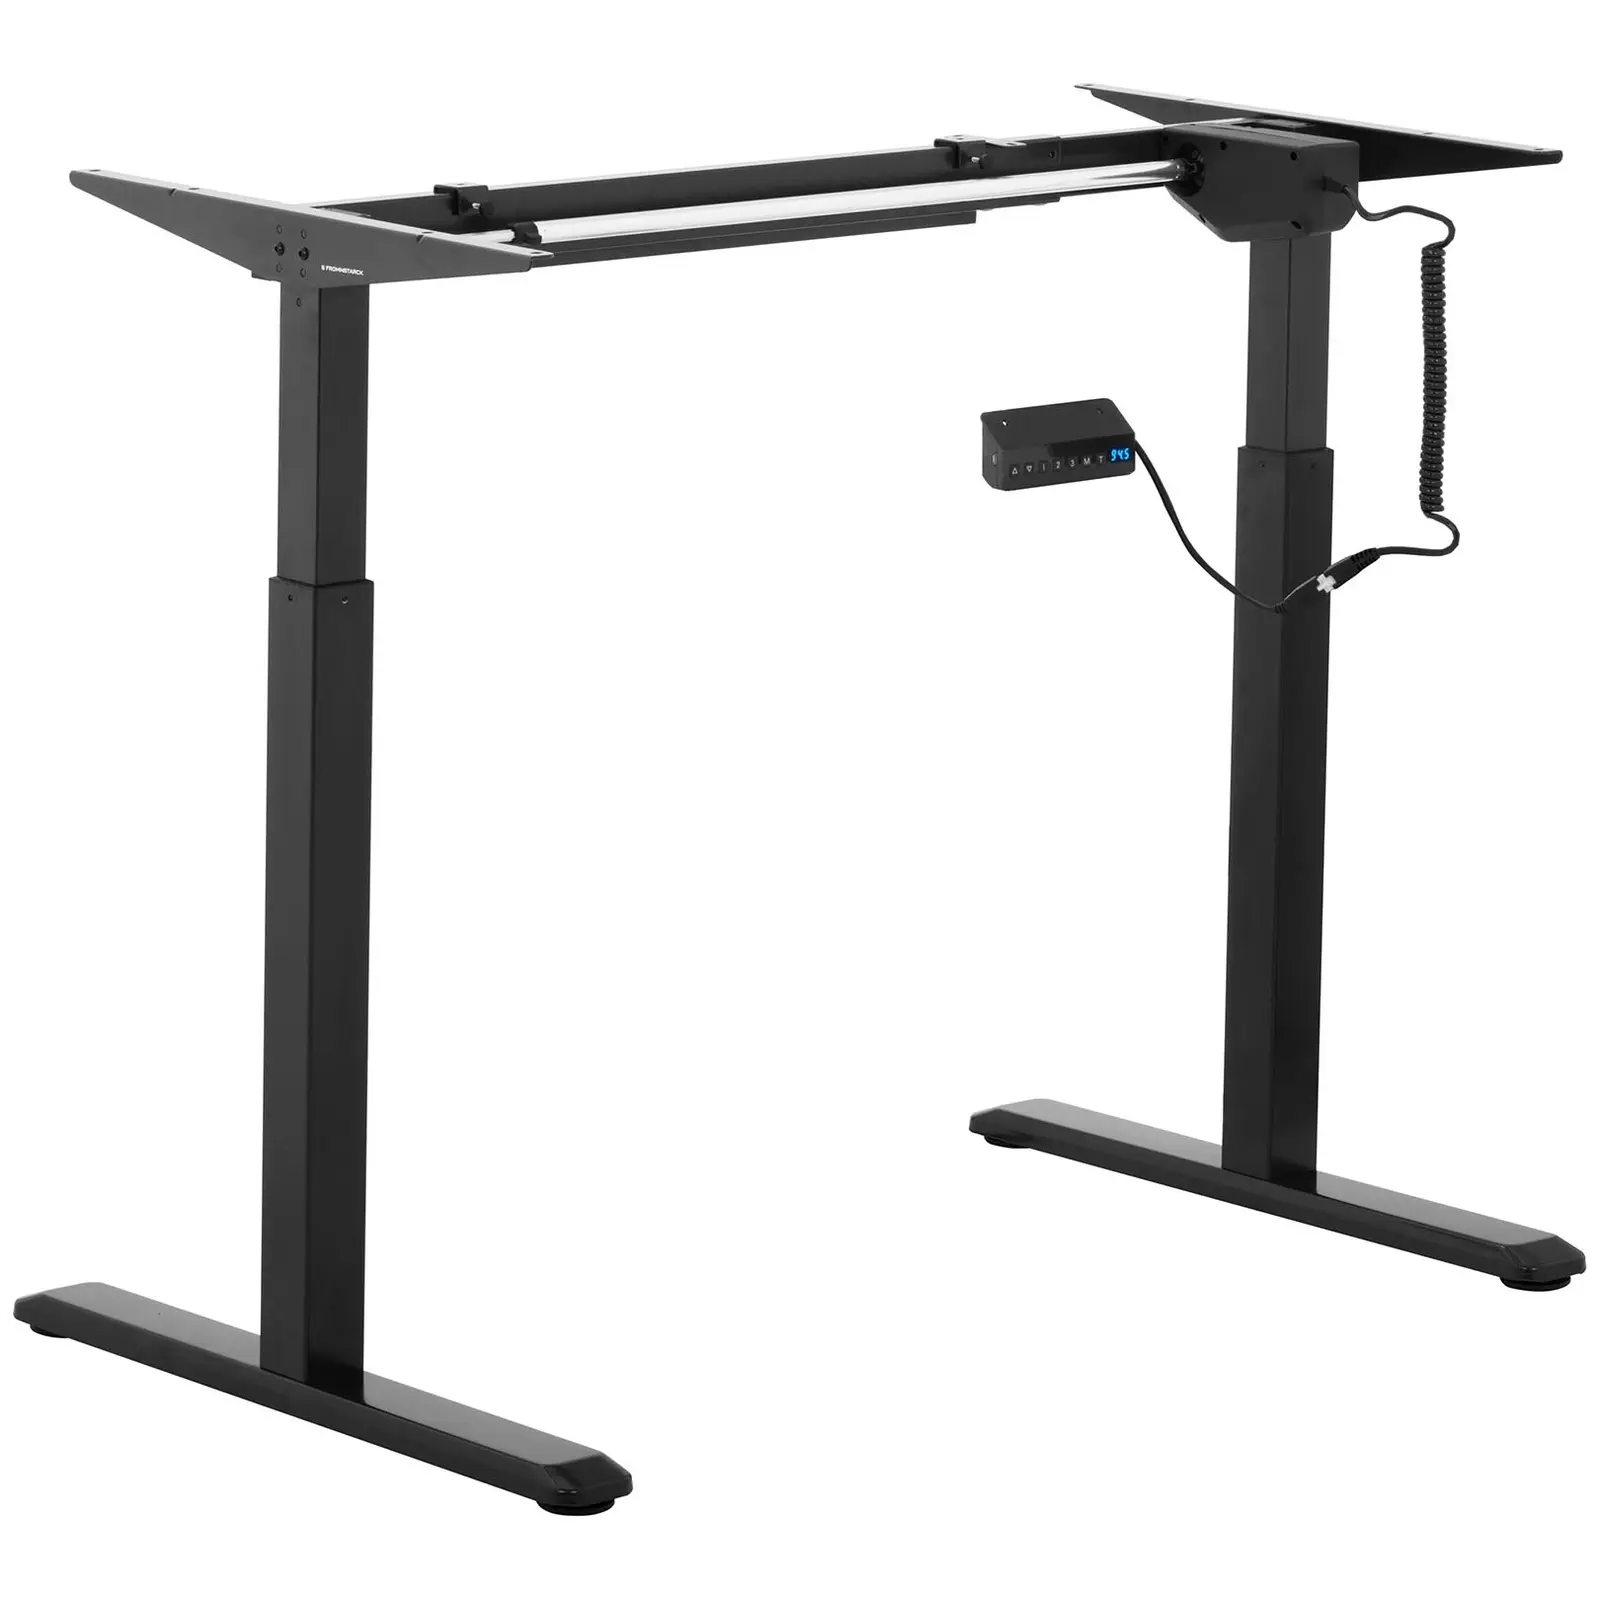 Supporto scrivania regolabile in altezza - 120 W - 80 kg - nero